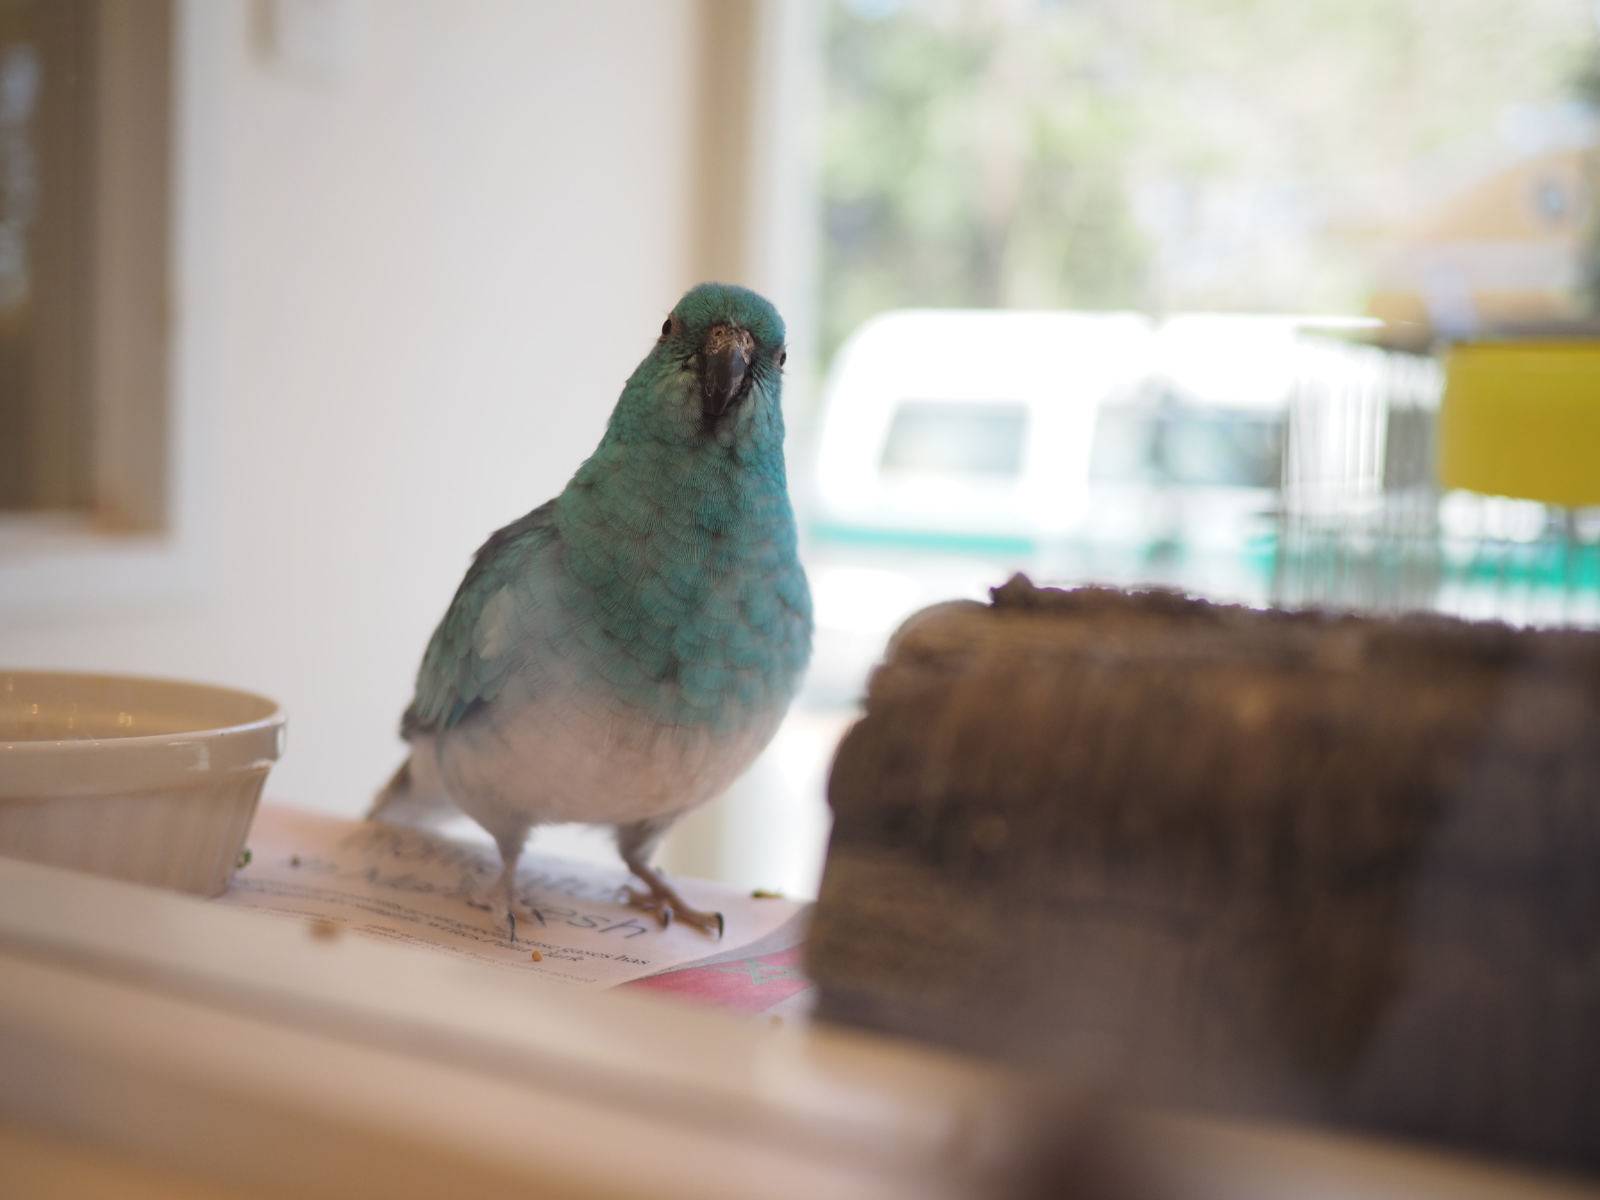 A bird in the café